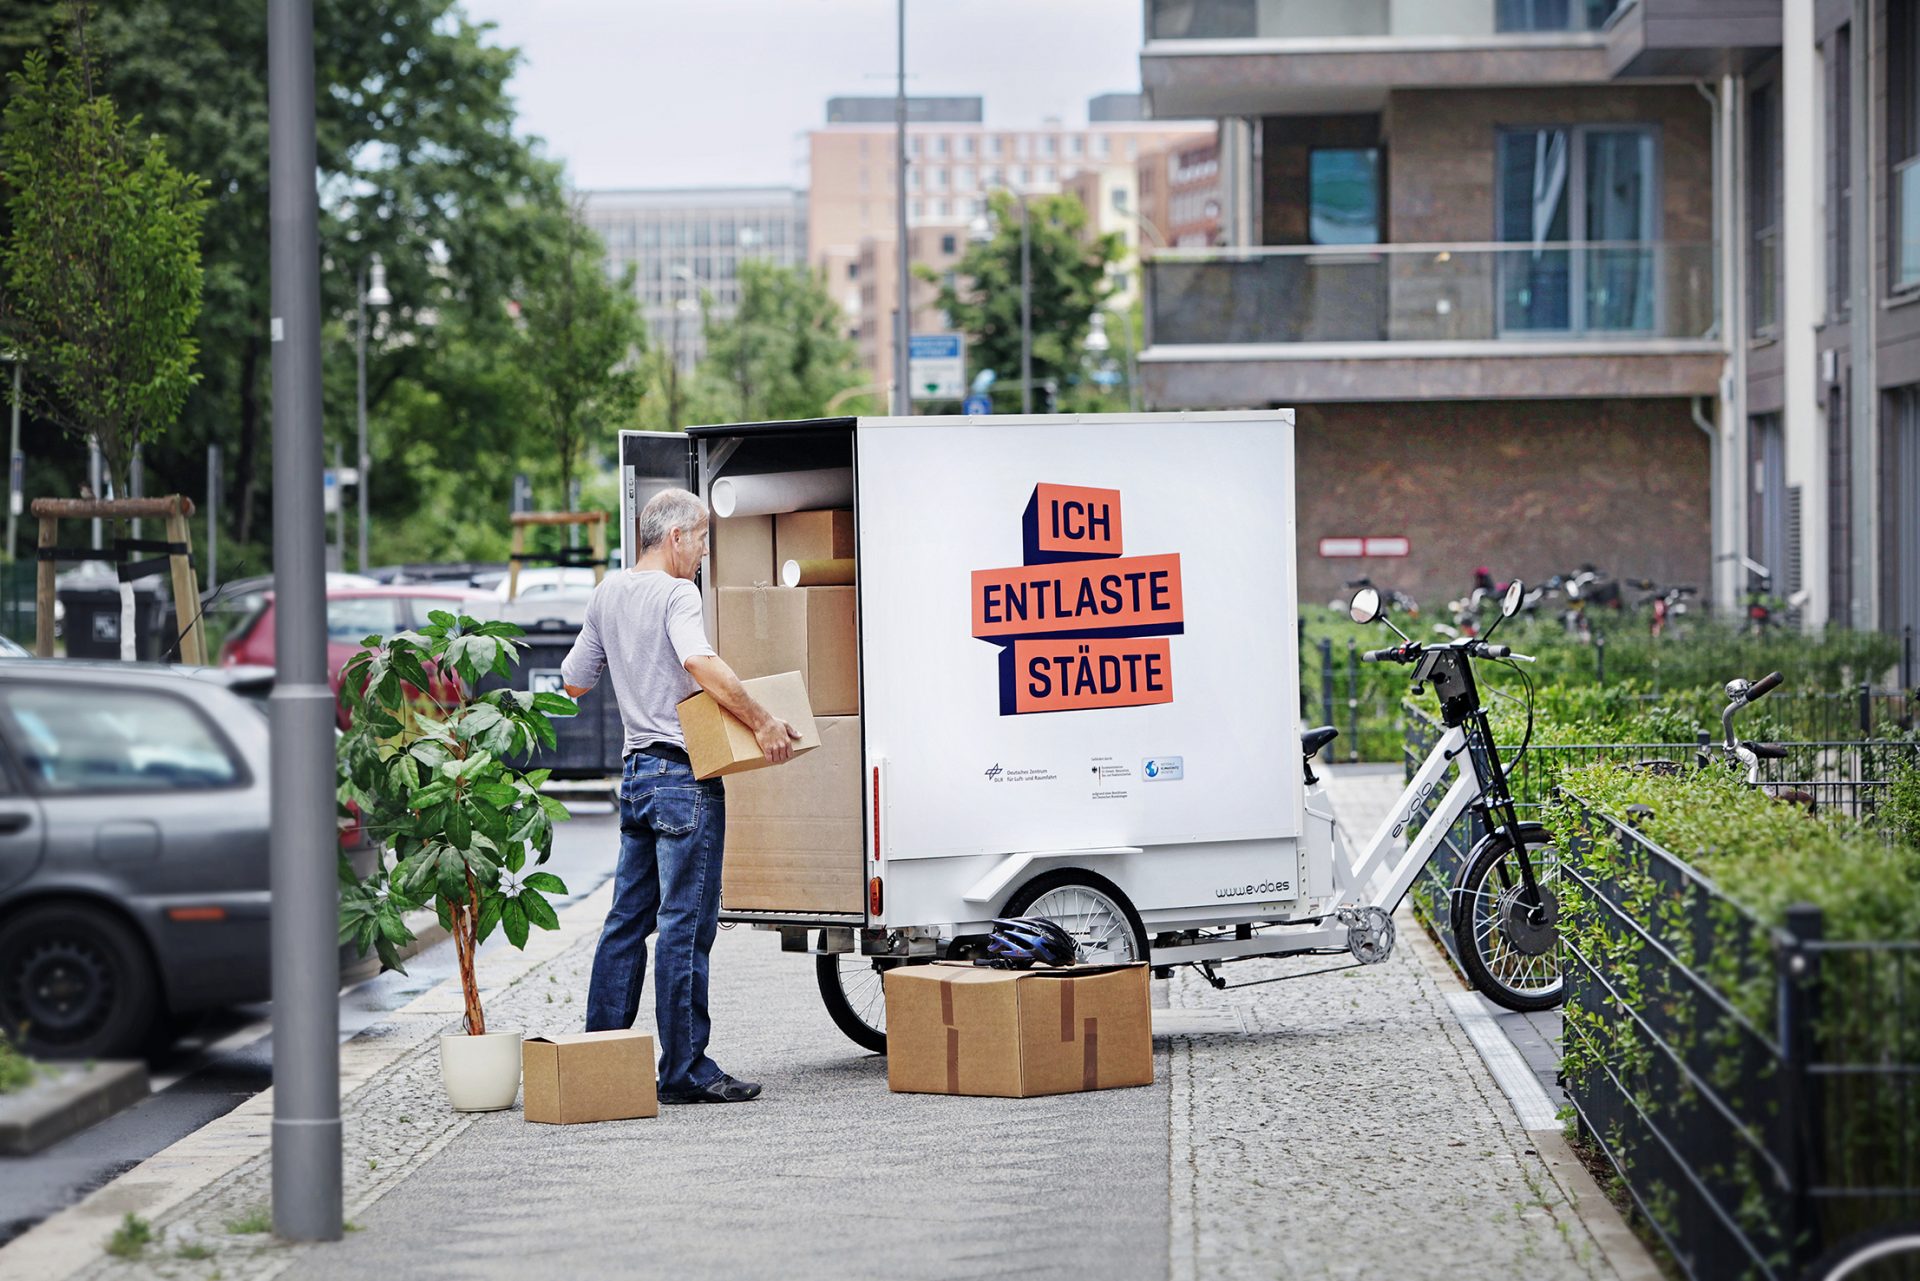 Sur le trottoir, un homme charge des cartons de déménagement sur un grand vélo-cargo. Sur la roue, il y a 